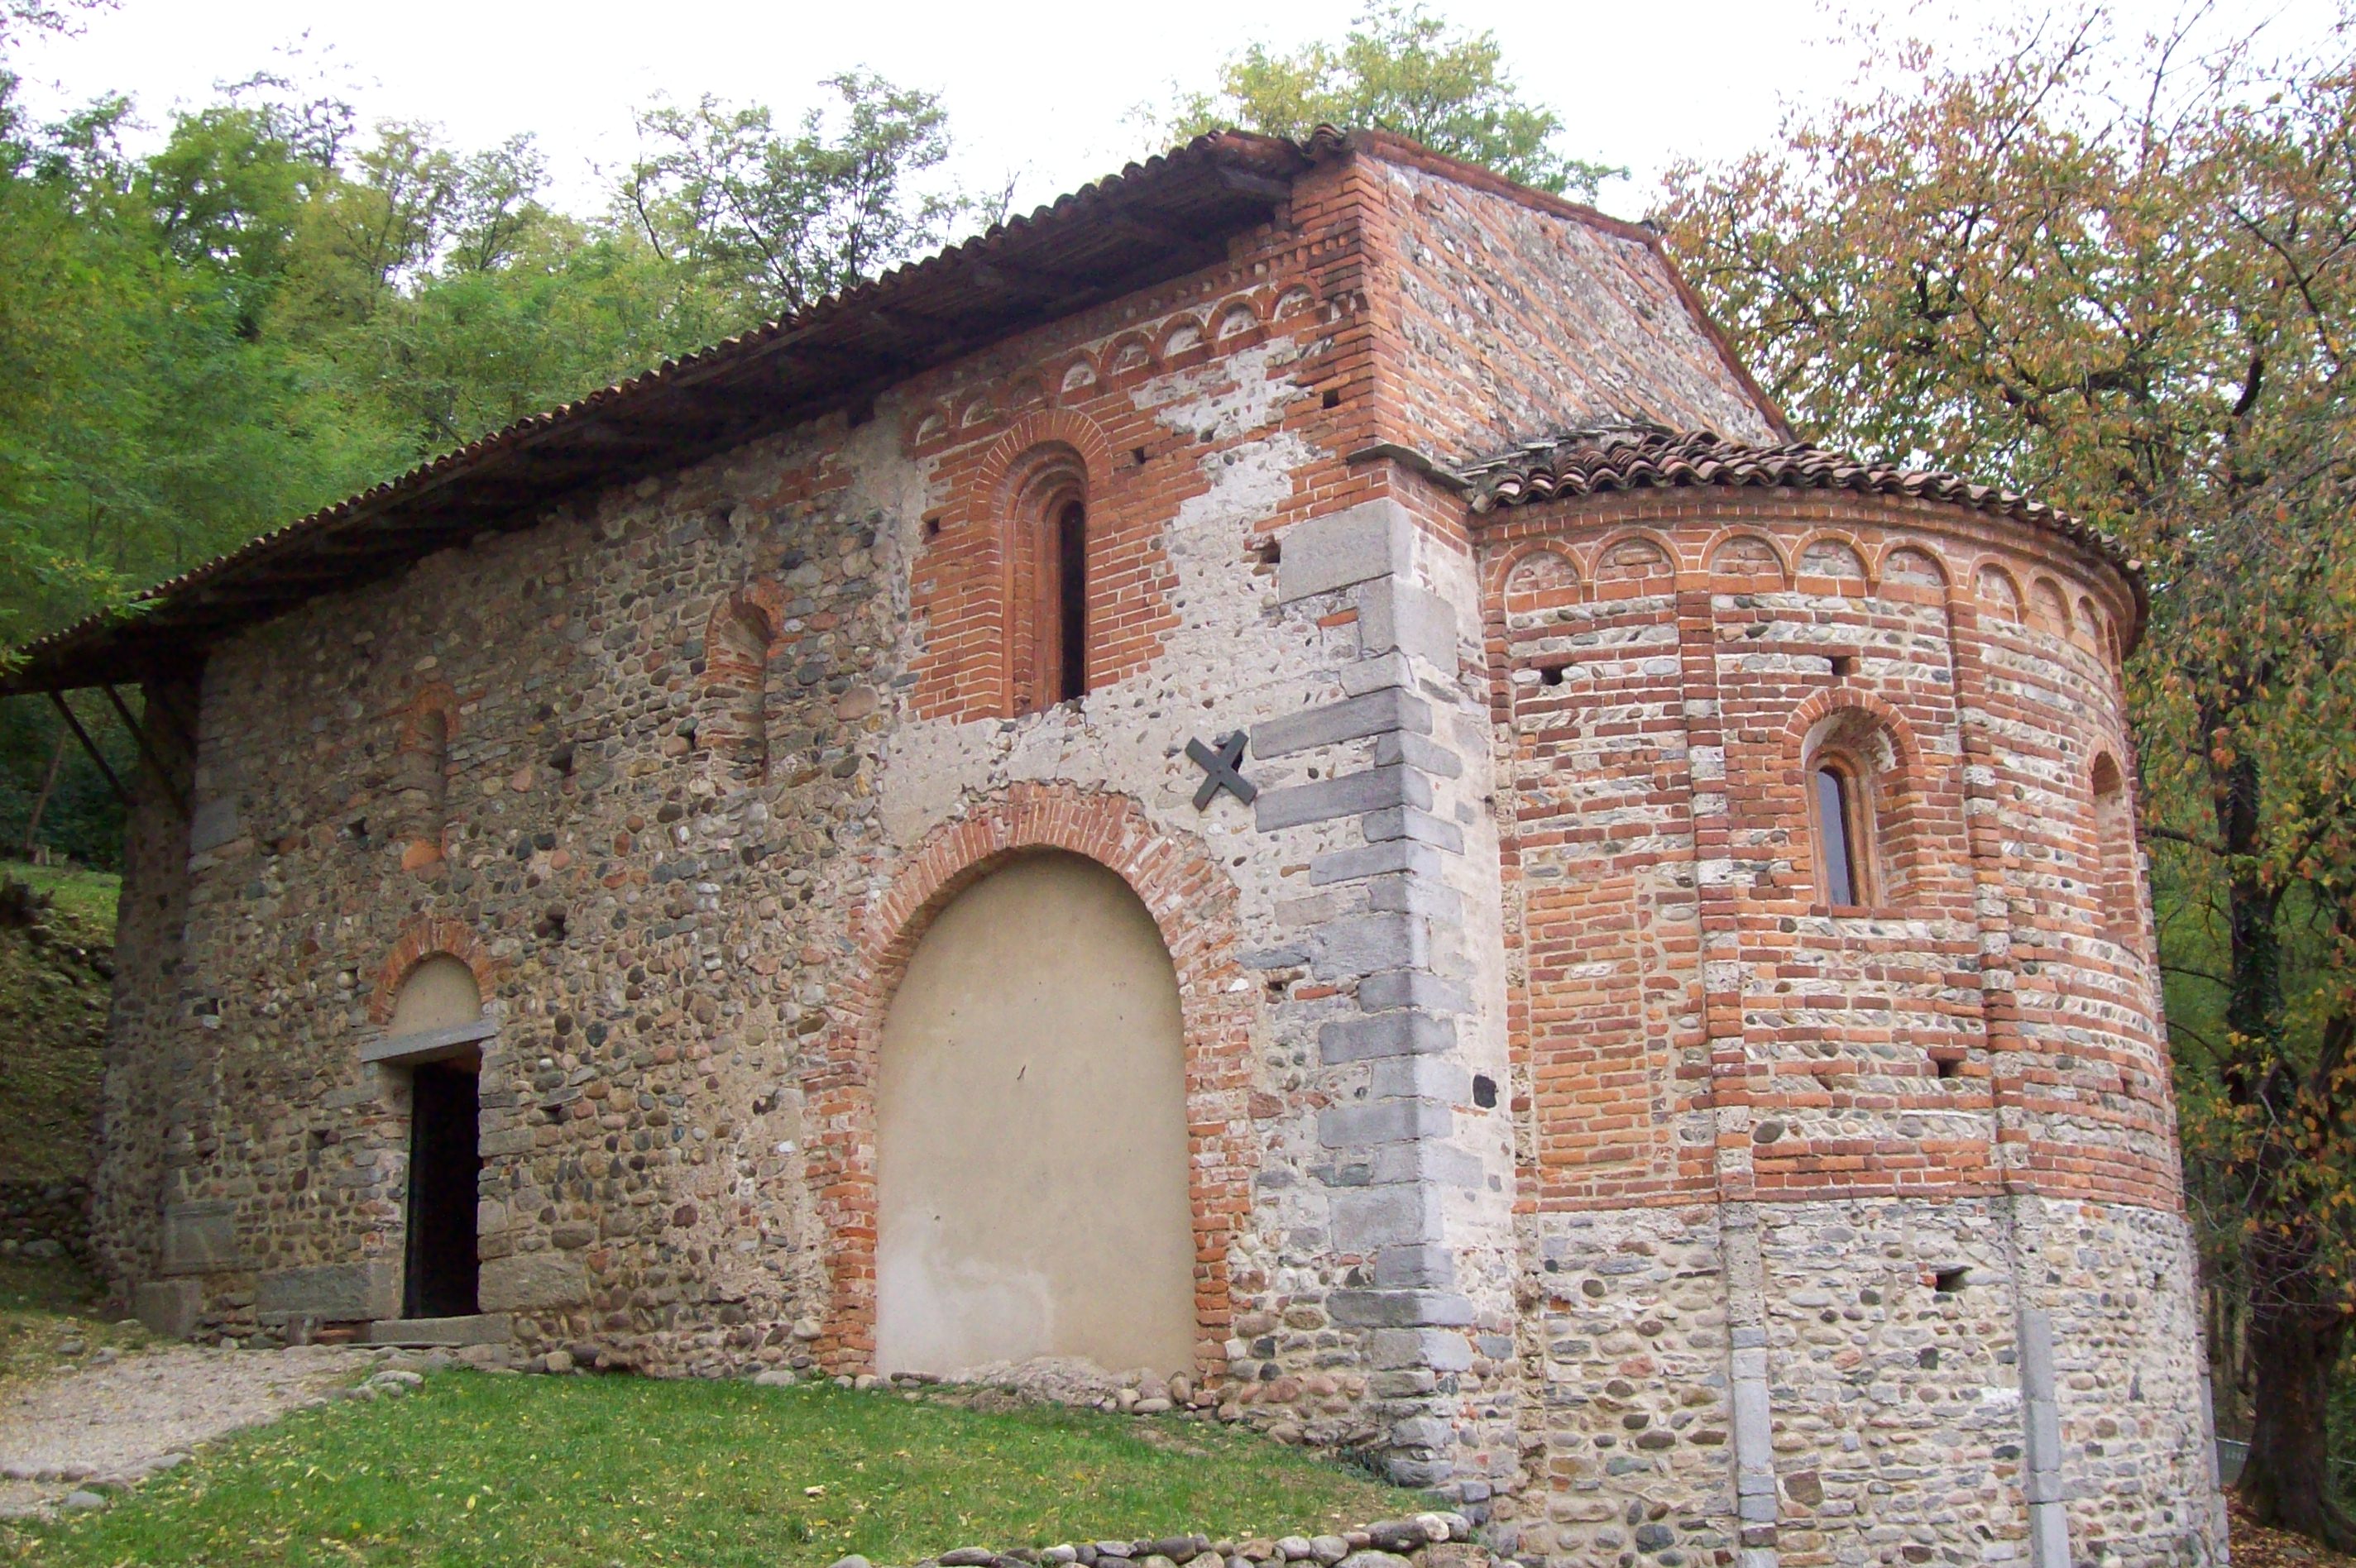 Monastery of Peat